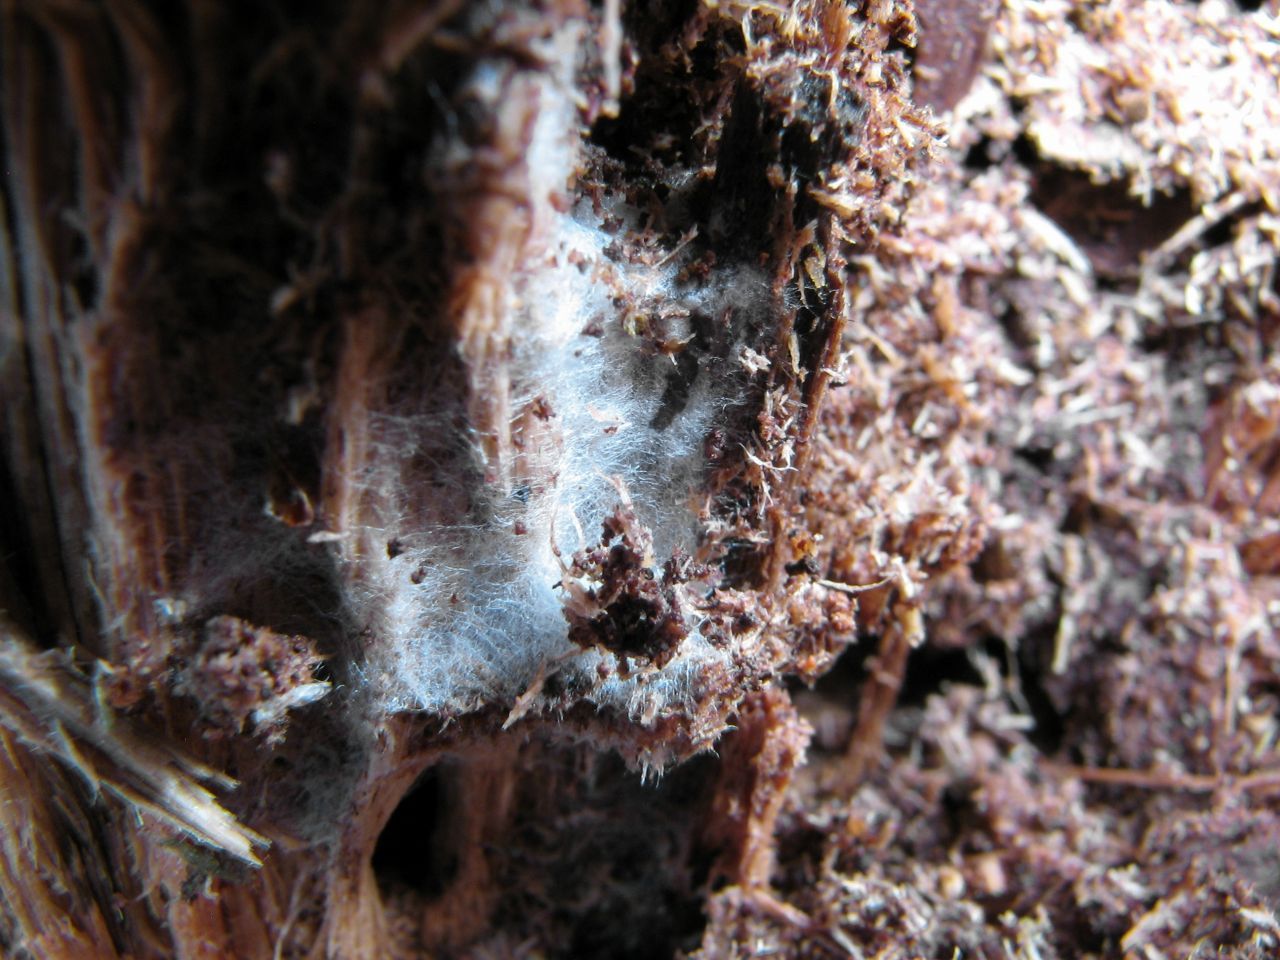 Die weißen Fäden sind Mykorrhiza-Pilze. Sie breiten sich wie ein Netz auch unter der Erde aus, verbinden sich mit Pflanzen und bilden mit diesen eine Lebensgemeinschaft.